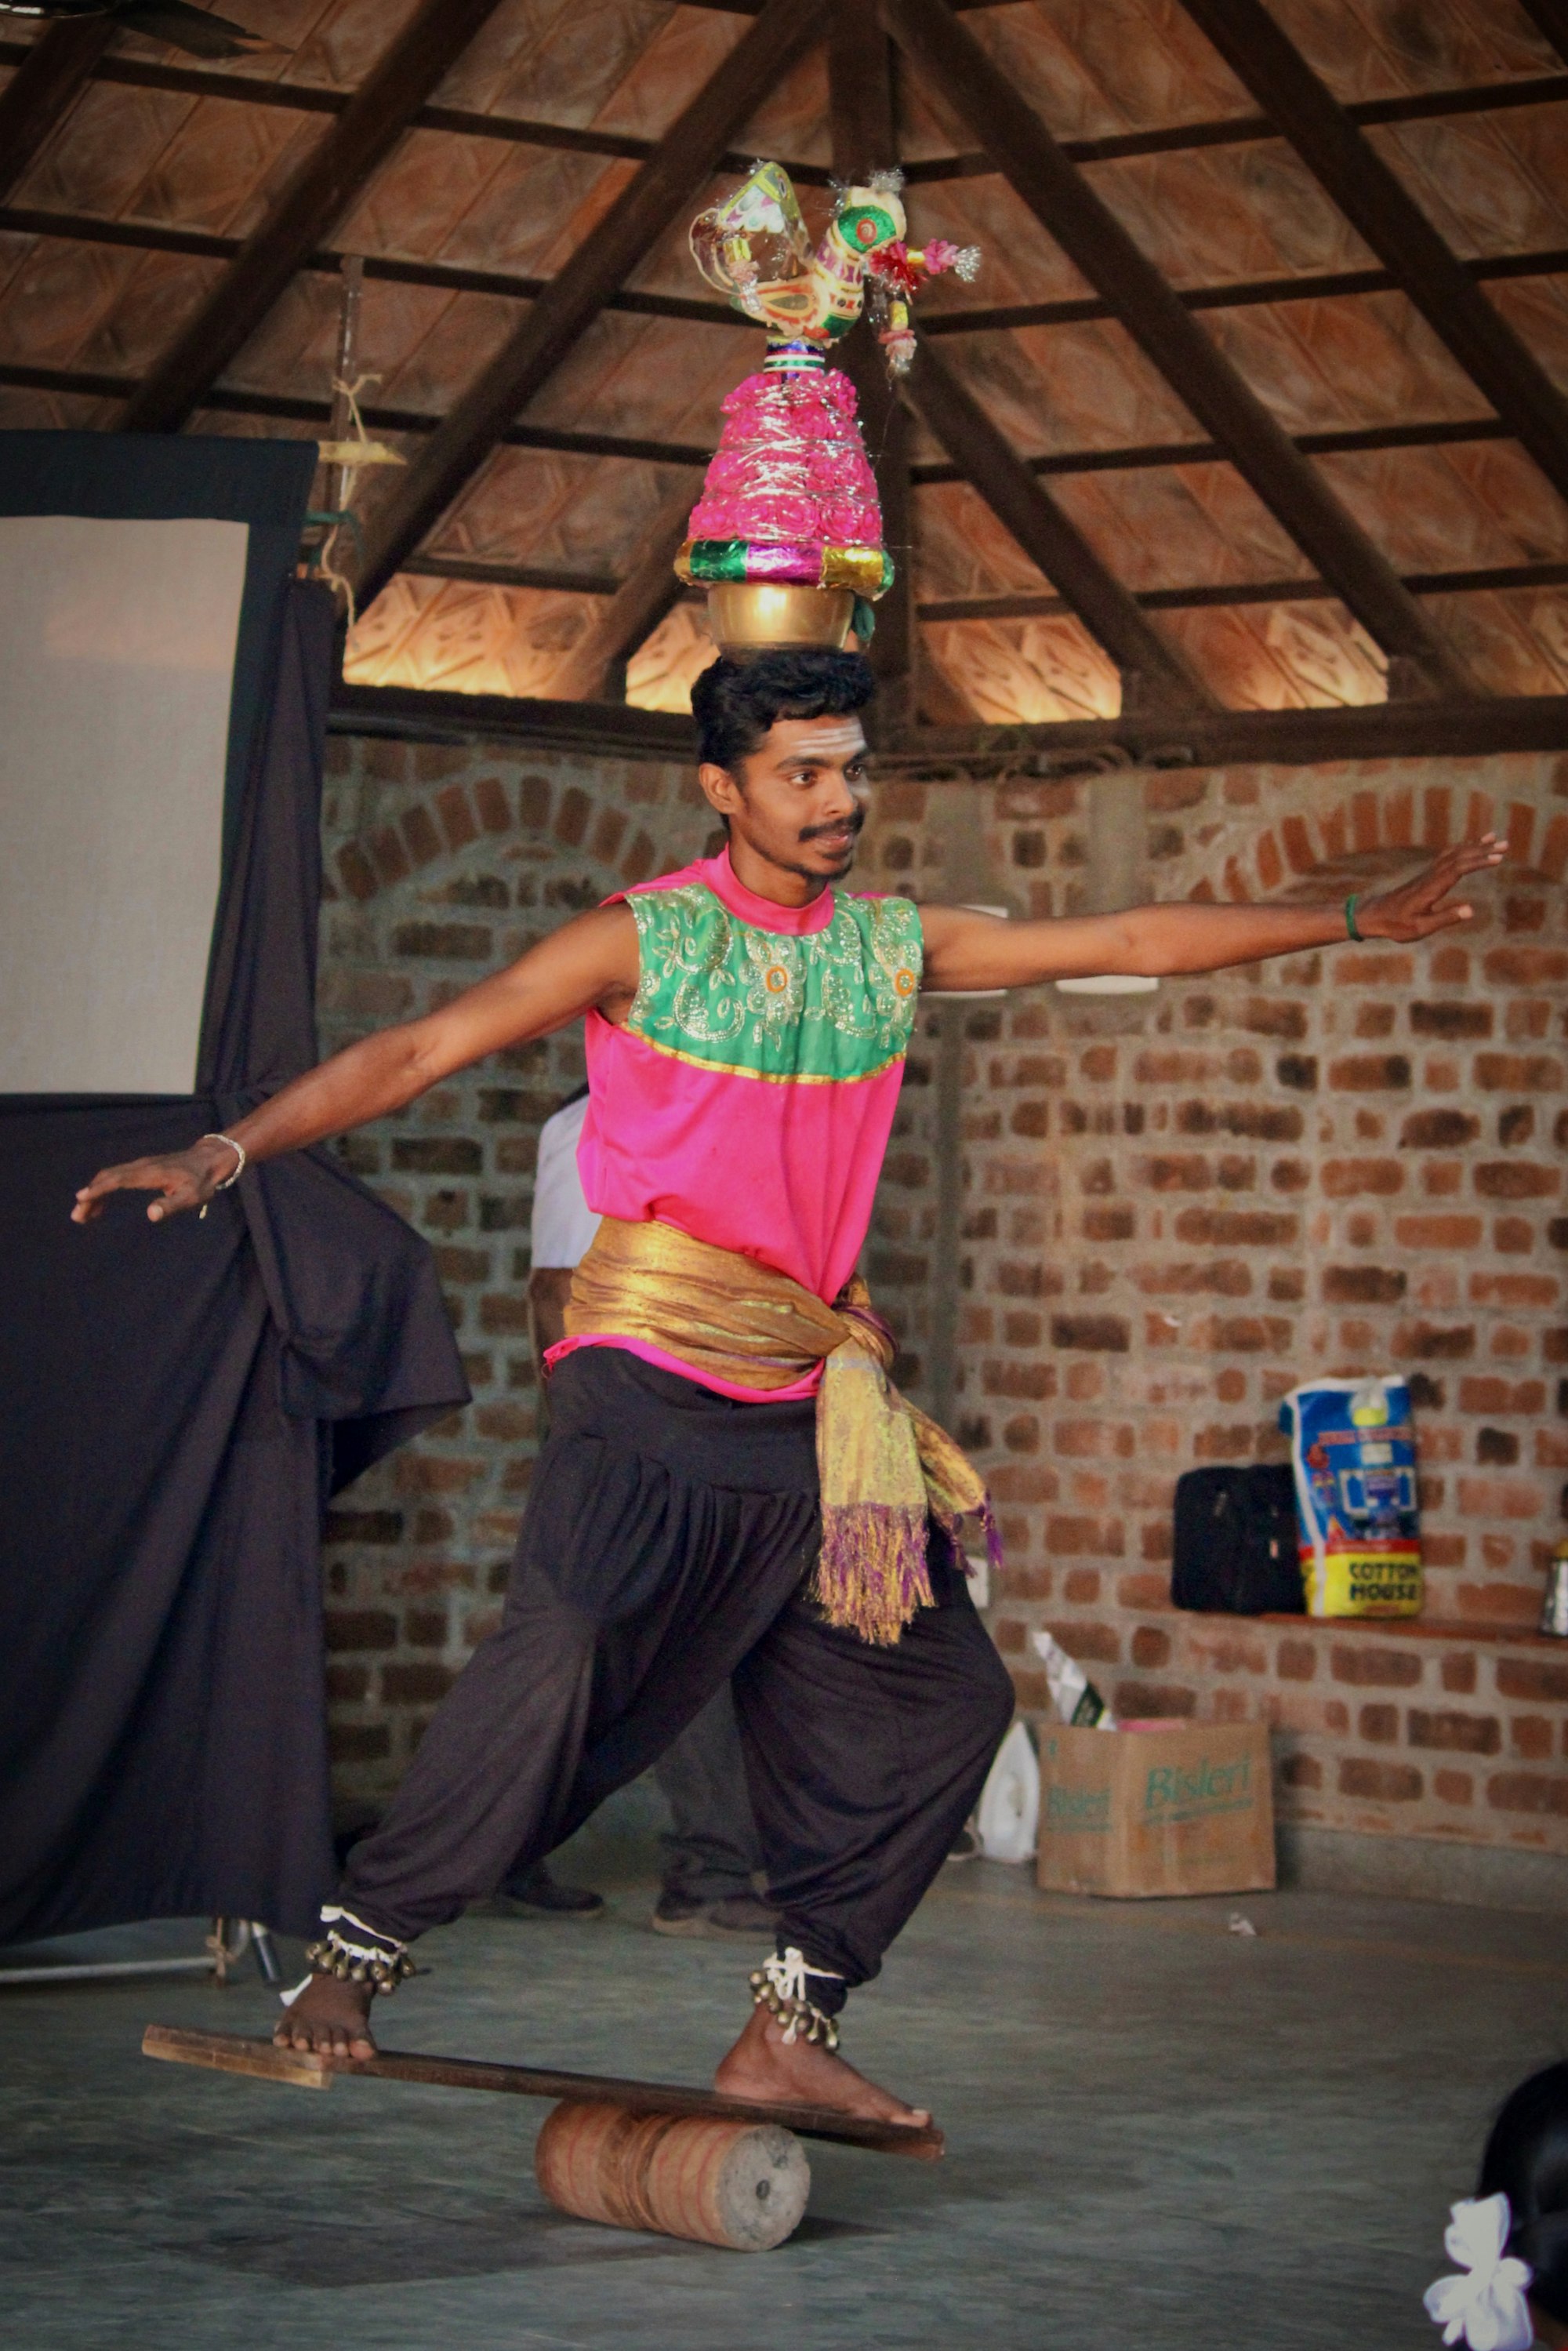 Karakattam:​ Ancient folk dance of Tamil Nadu

